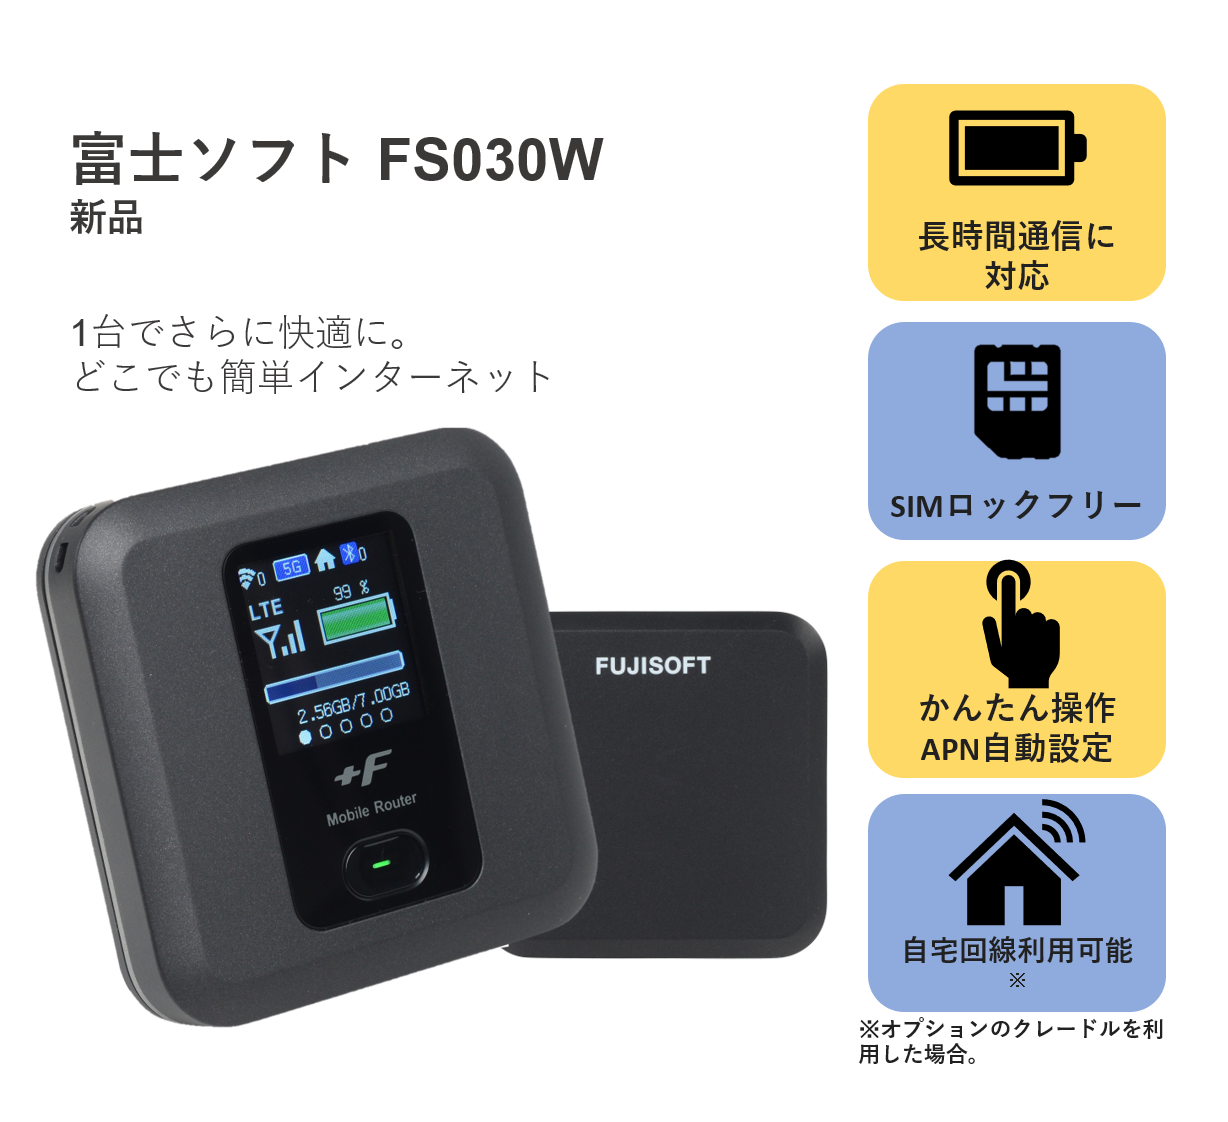 FUJISOFT +F FS030W 富士ソフト モバイルWi-Fiルーター